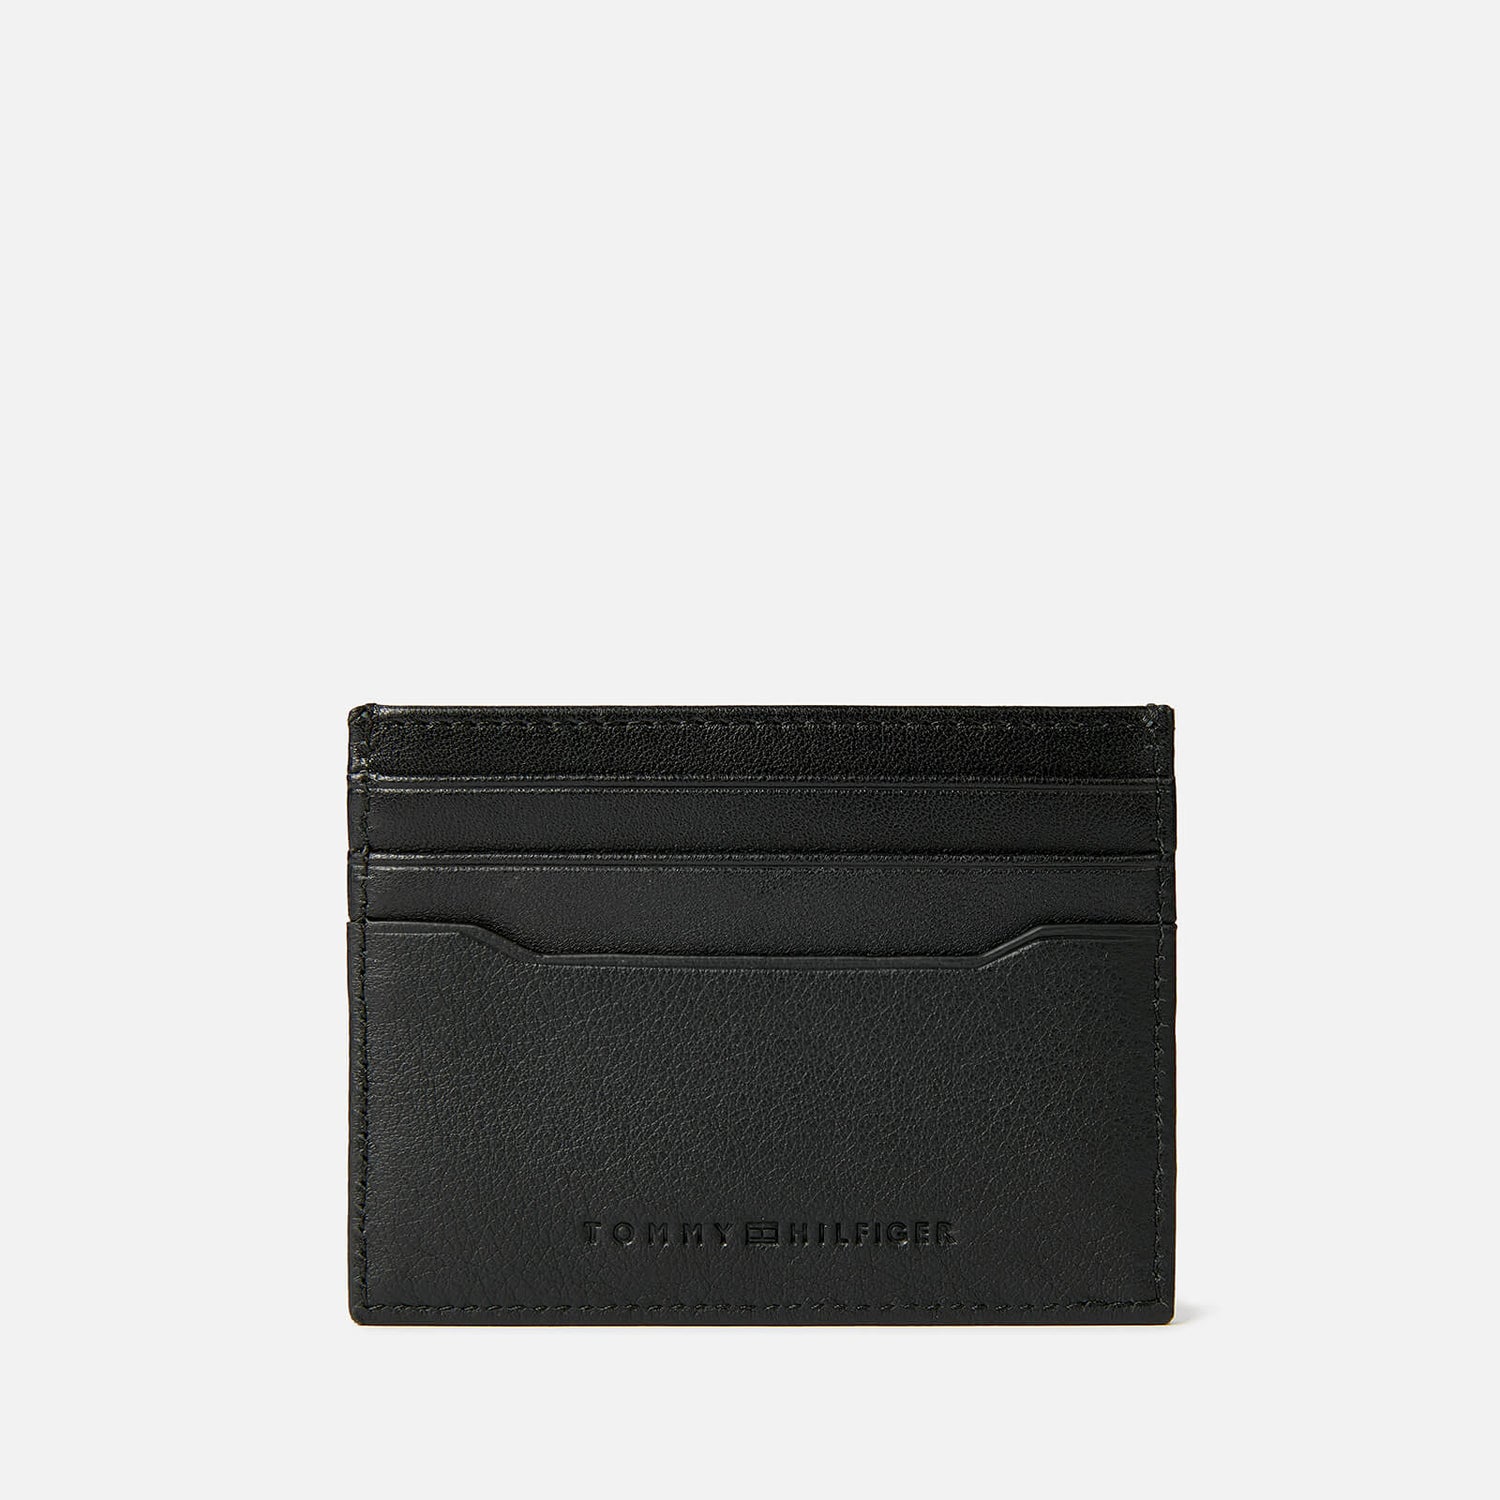 Tommy Hilfiger Men's Downtown Leather Cardholder - Black